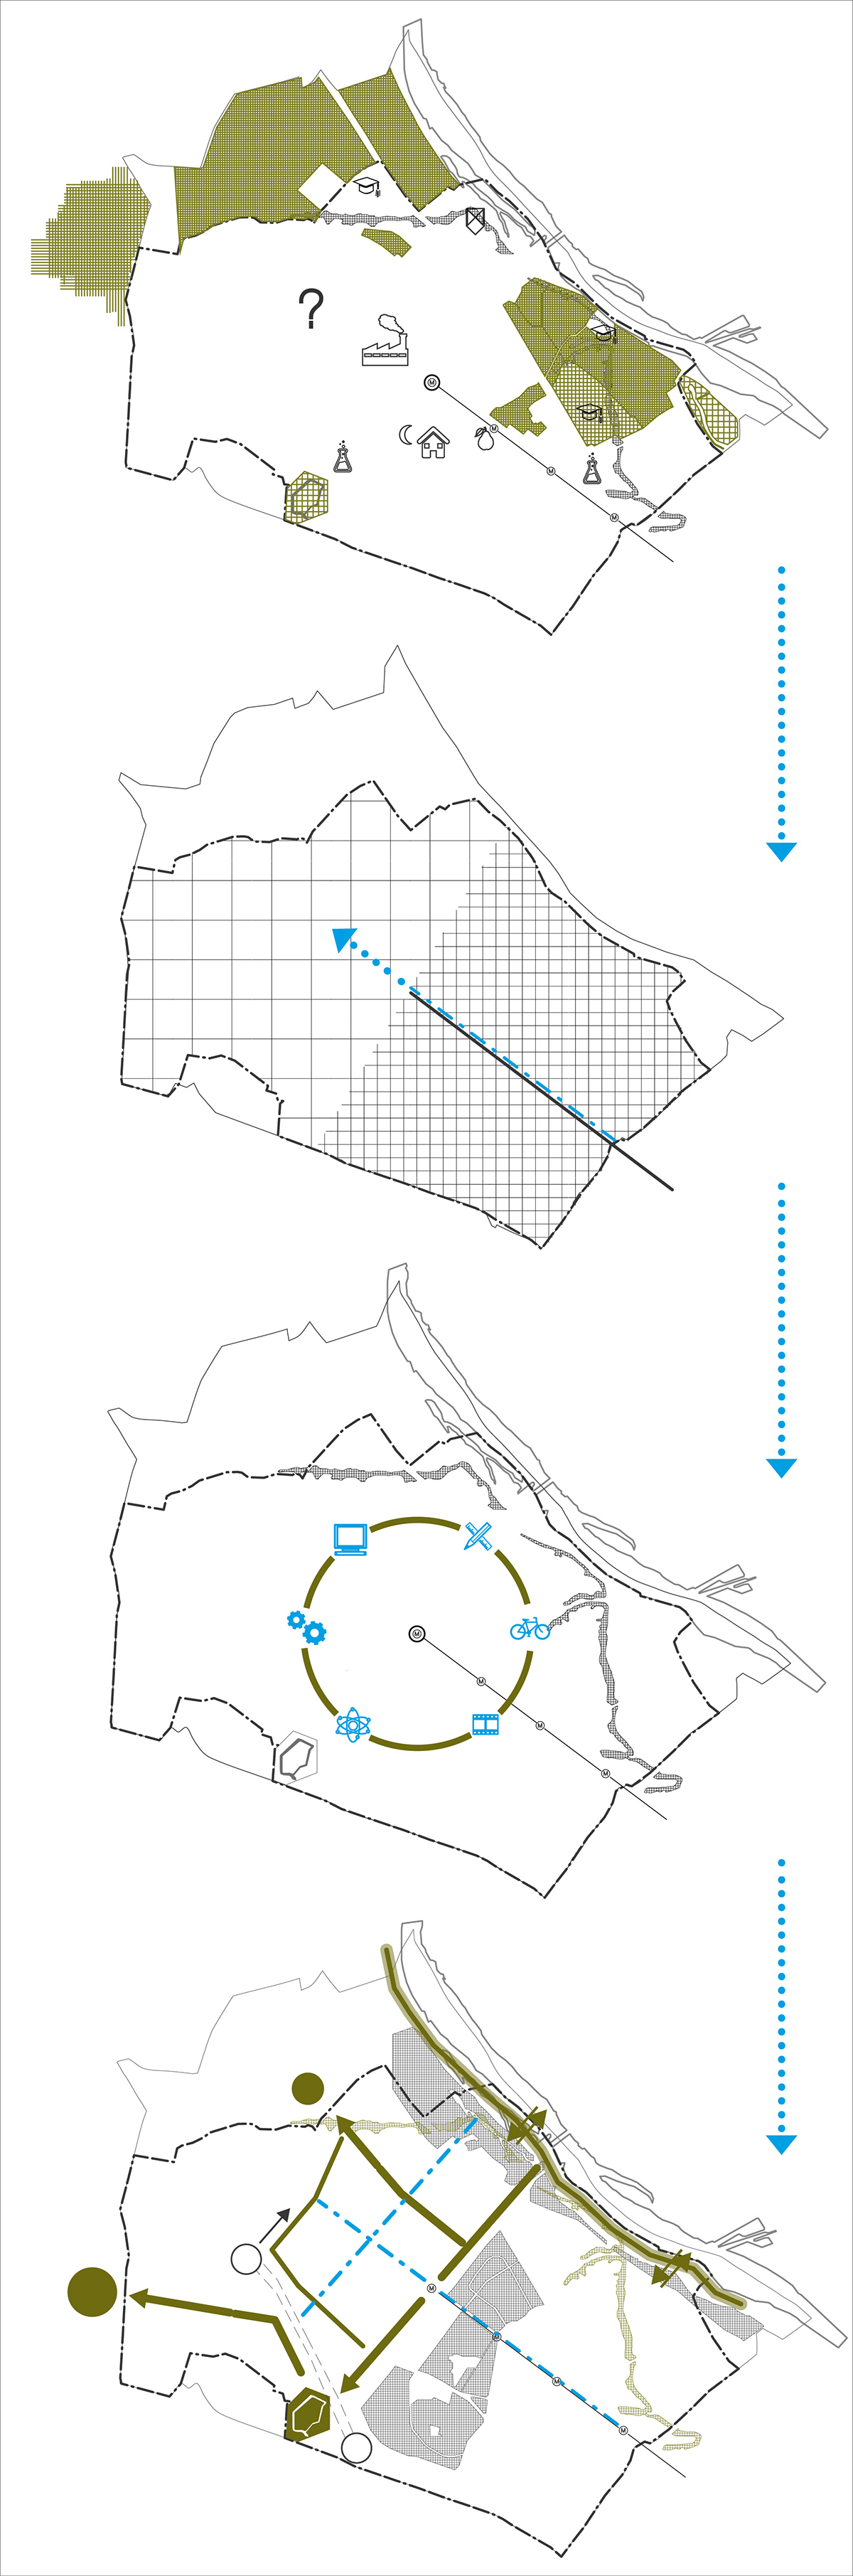 urbanism   spatial policy warsaw bielany city Urban Analysis